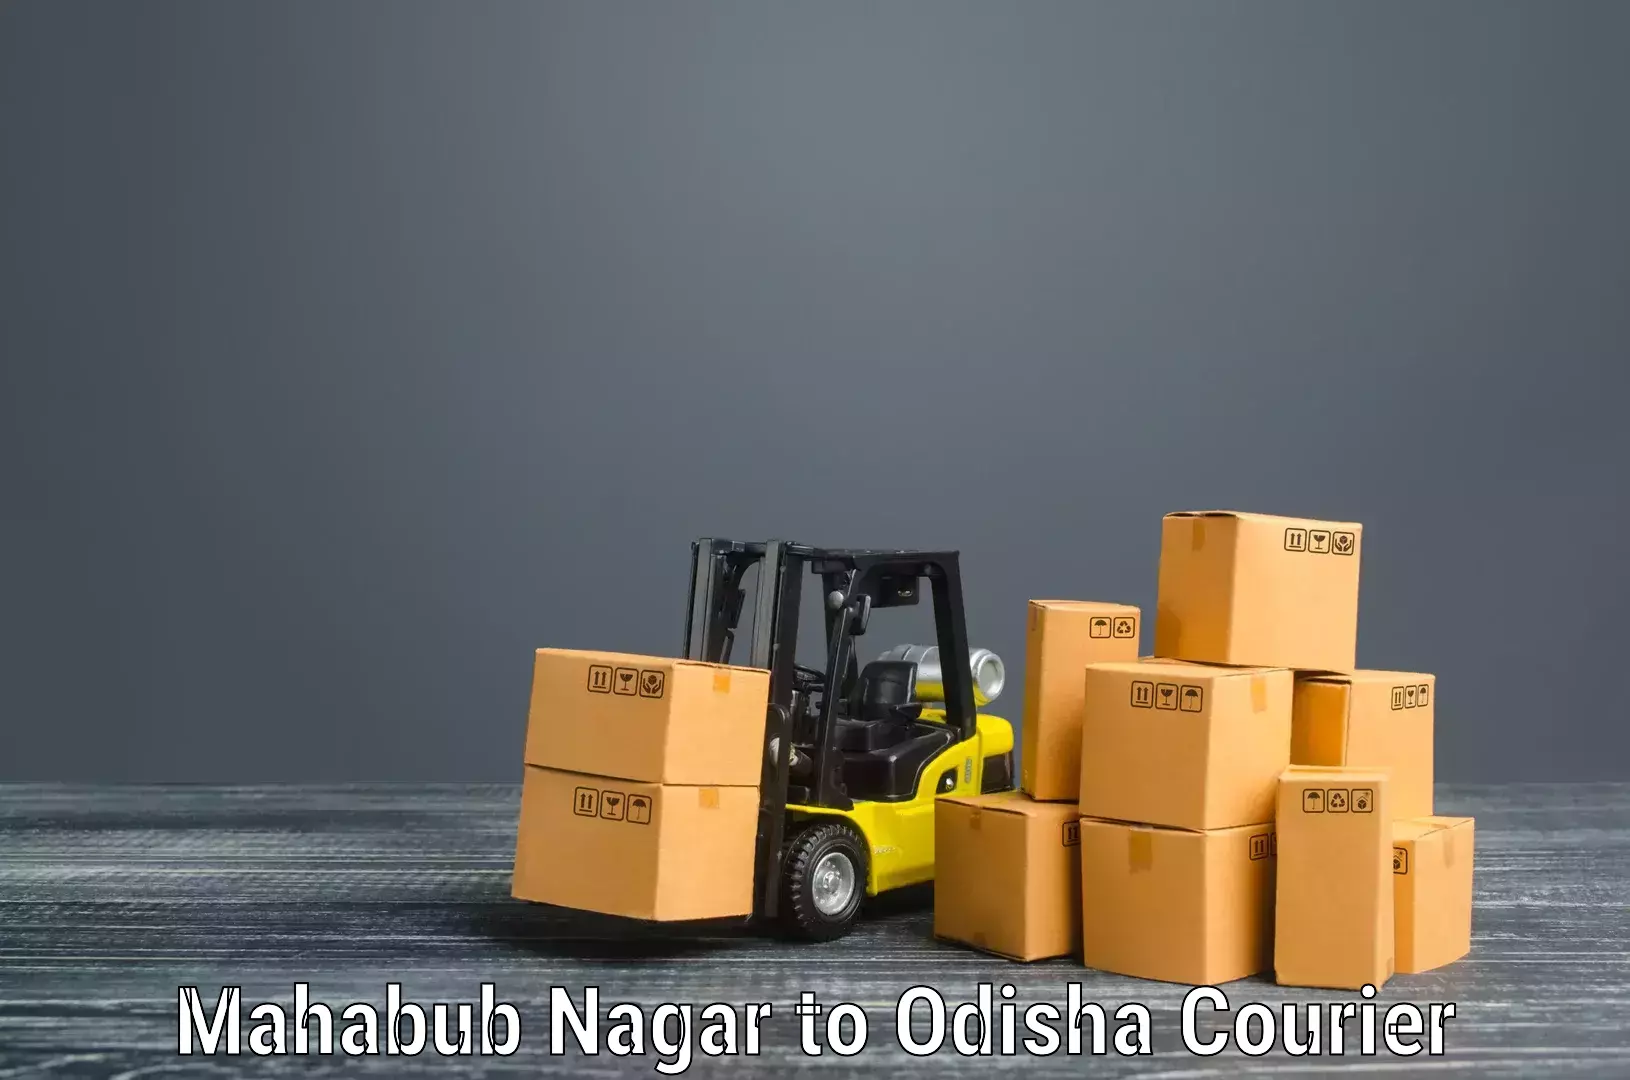 Professional moving strategies in Mahabub Nagar to Tangi